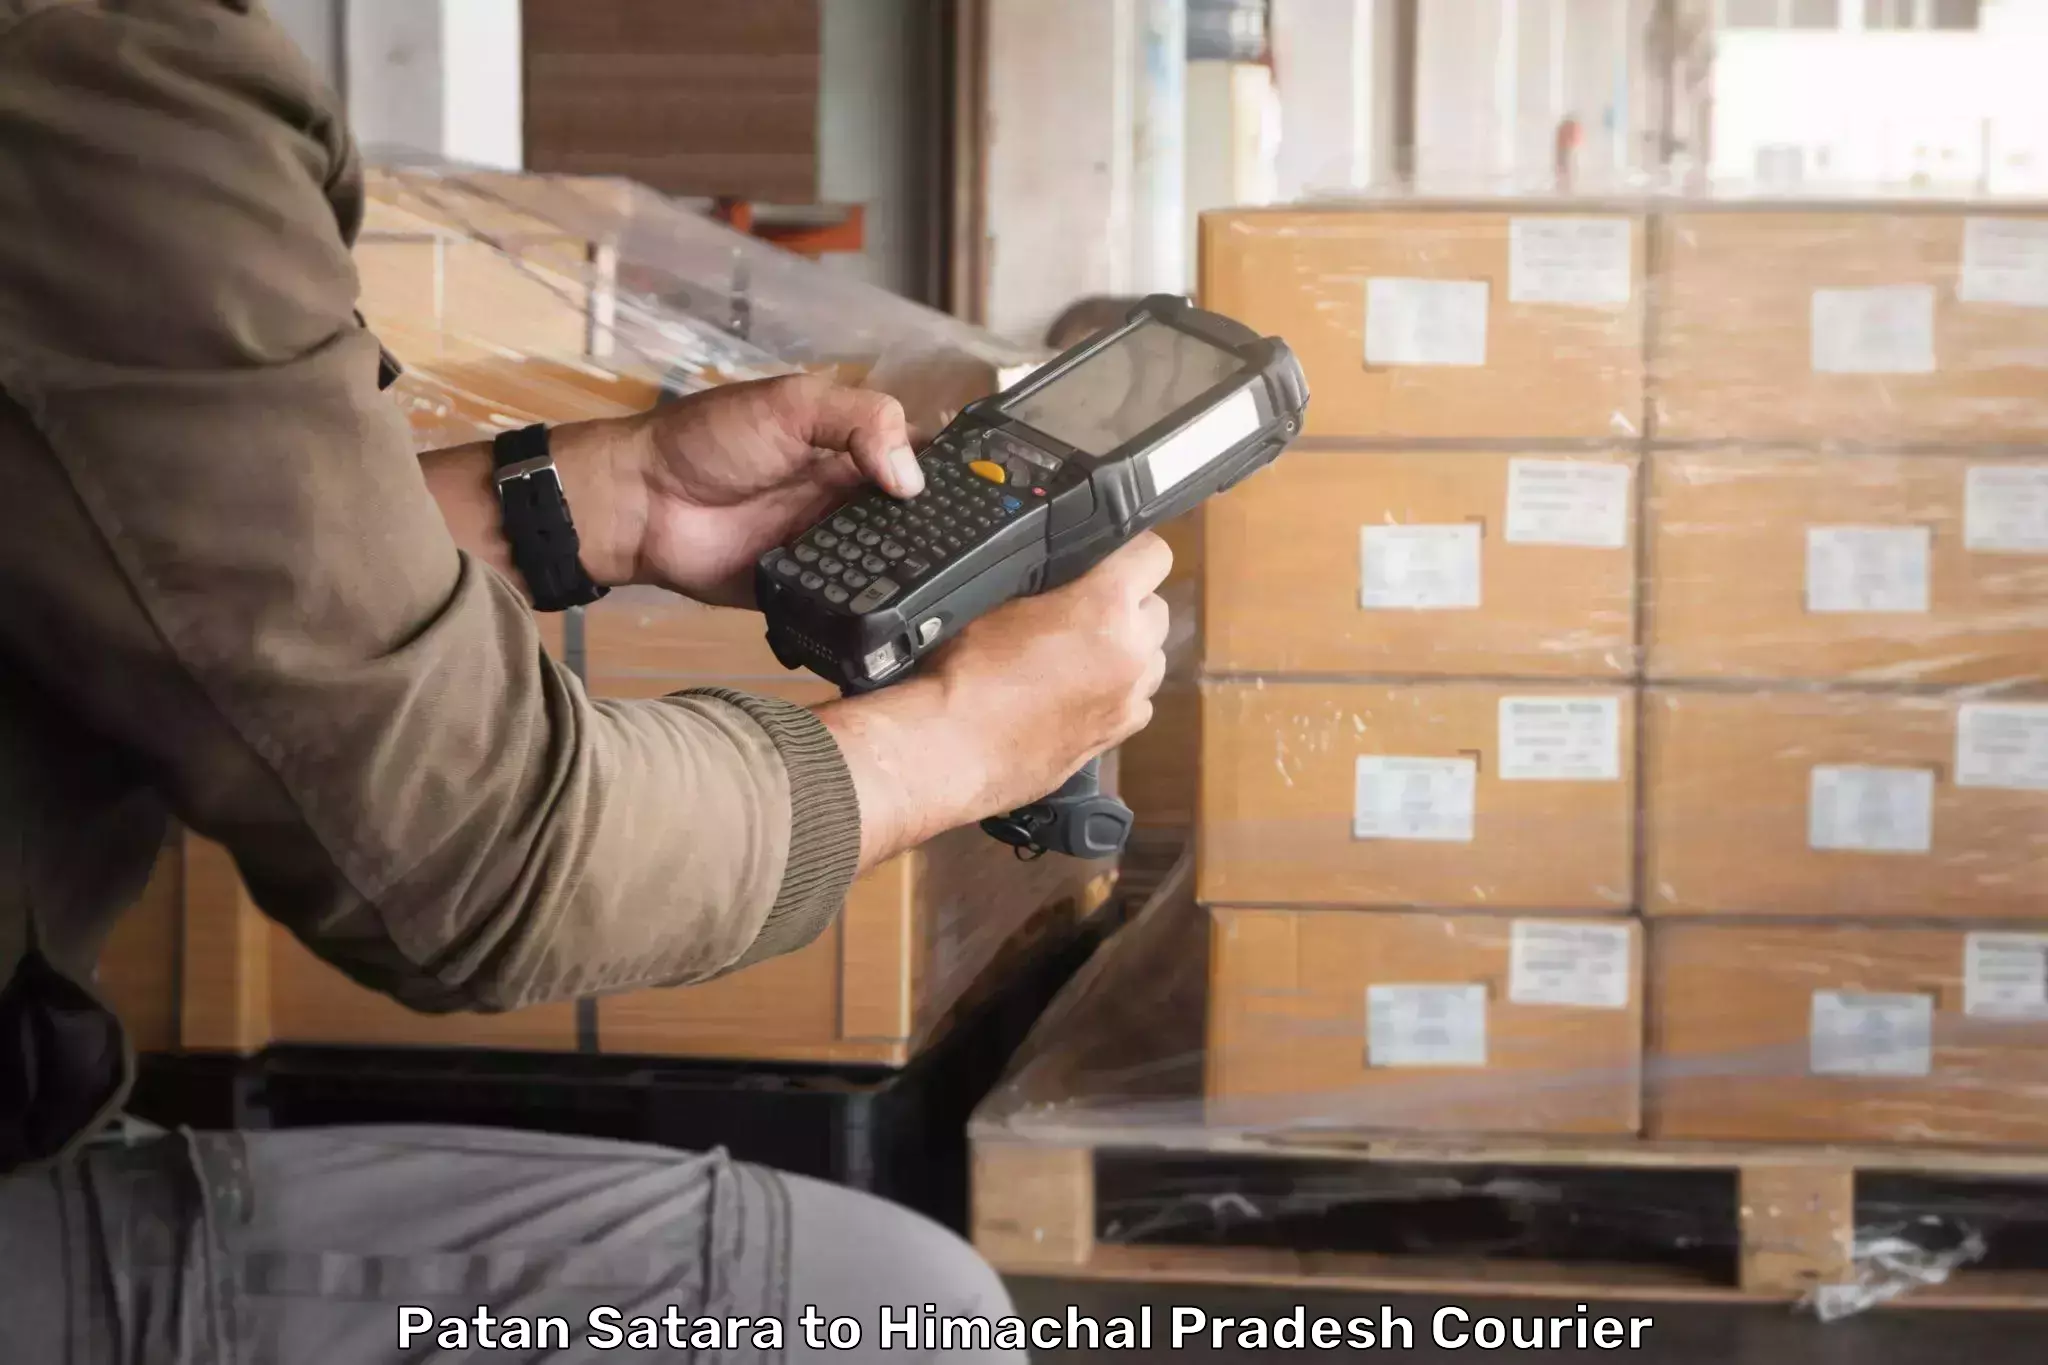 Courier app Patan Satara to Una Himachal Pradesh